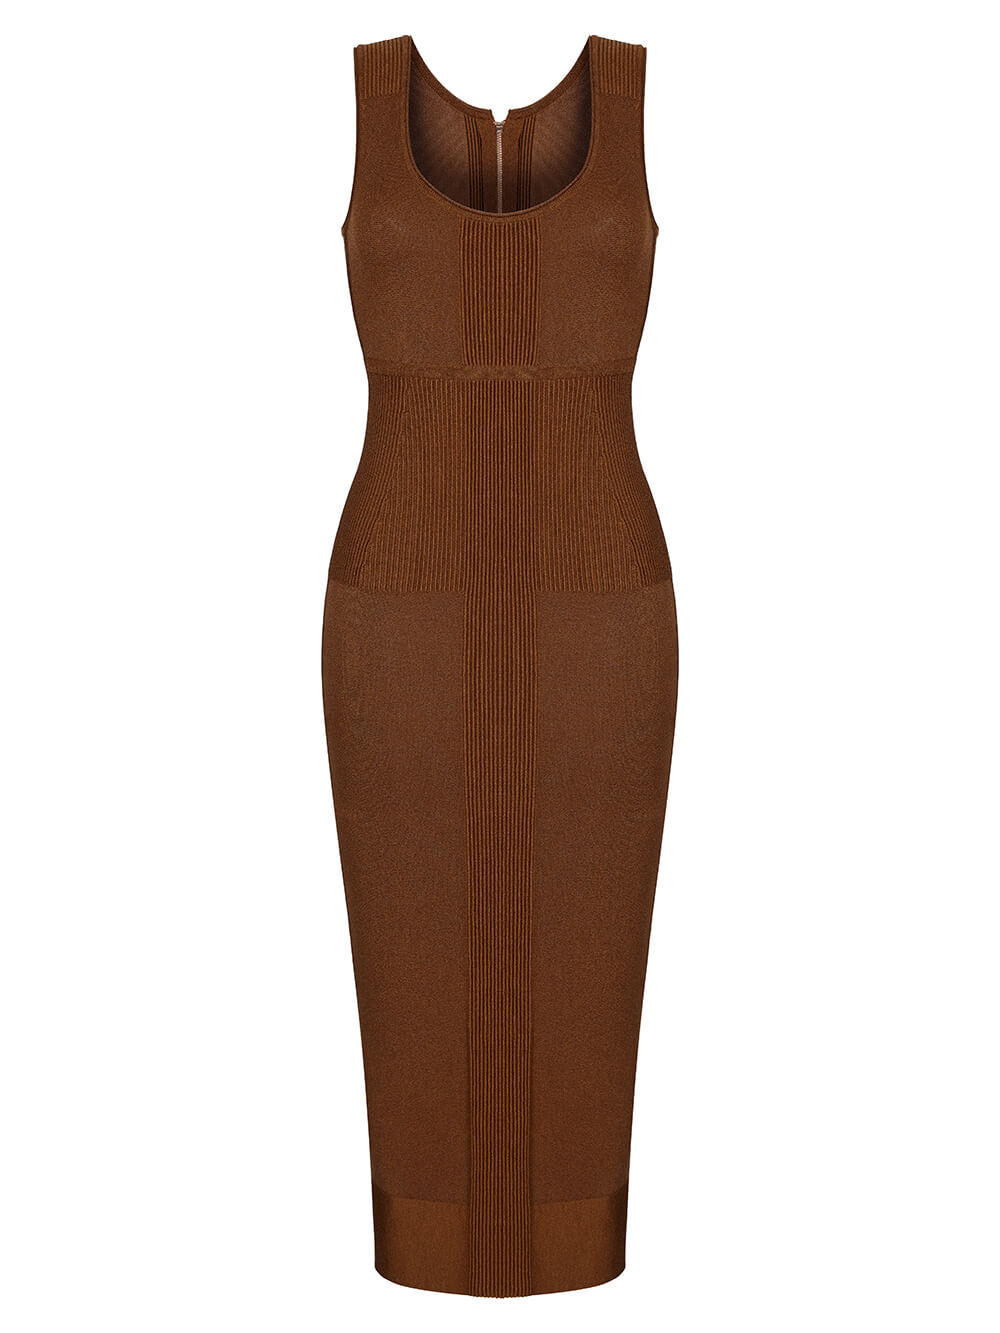 Женское платье коричневого цвета из шелка и вискозы